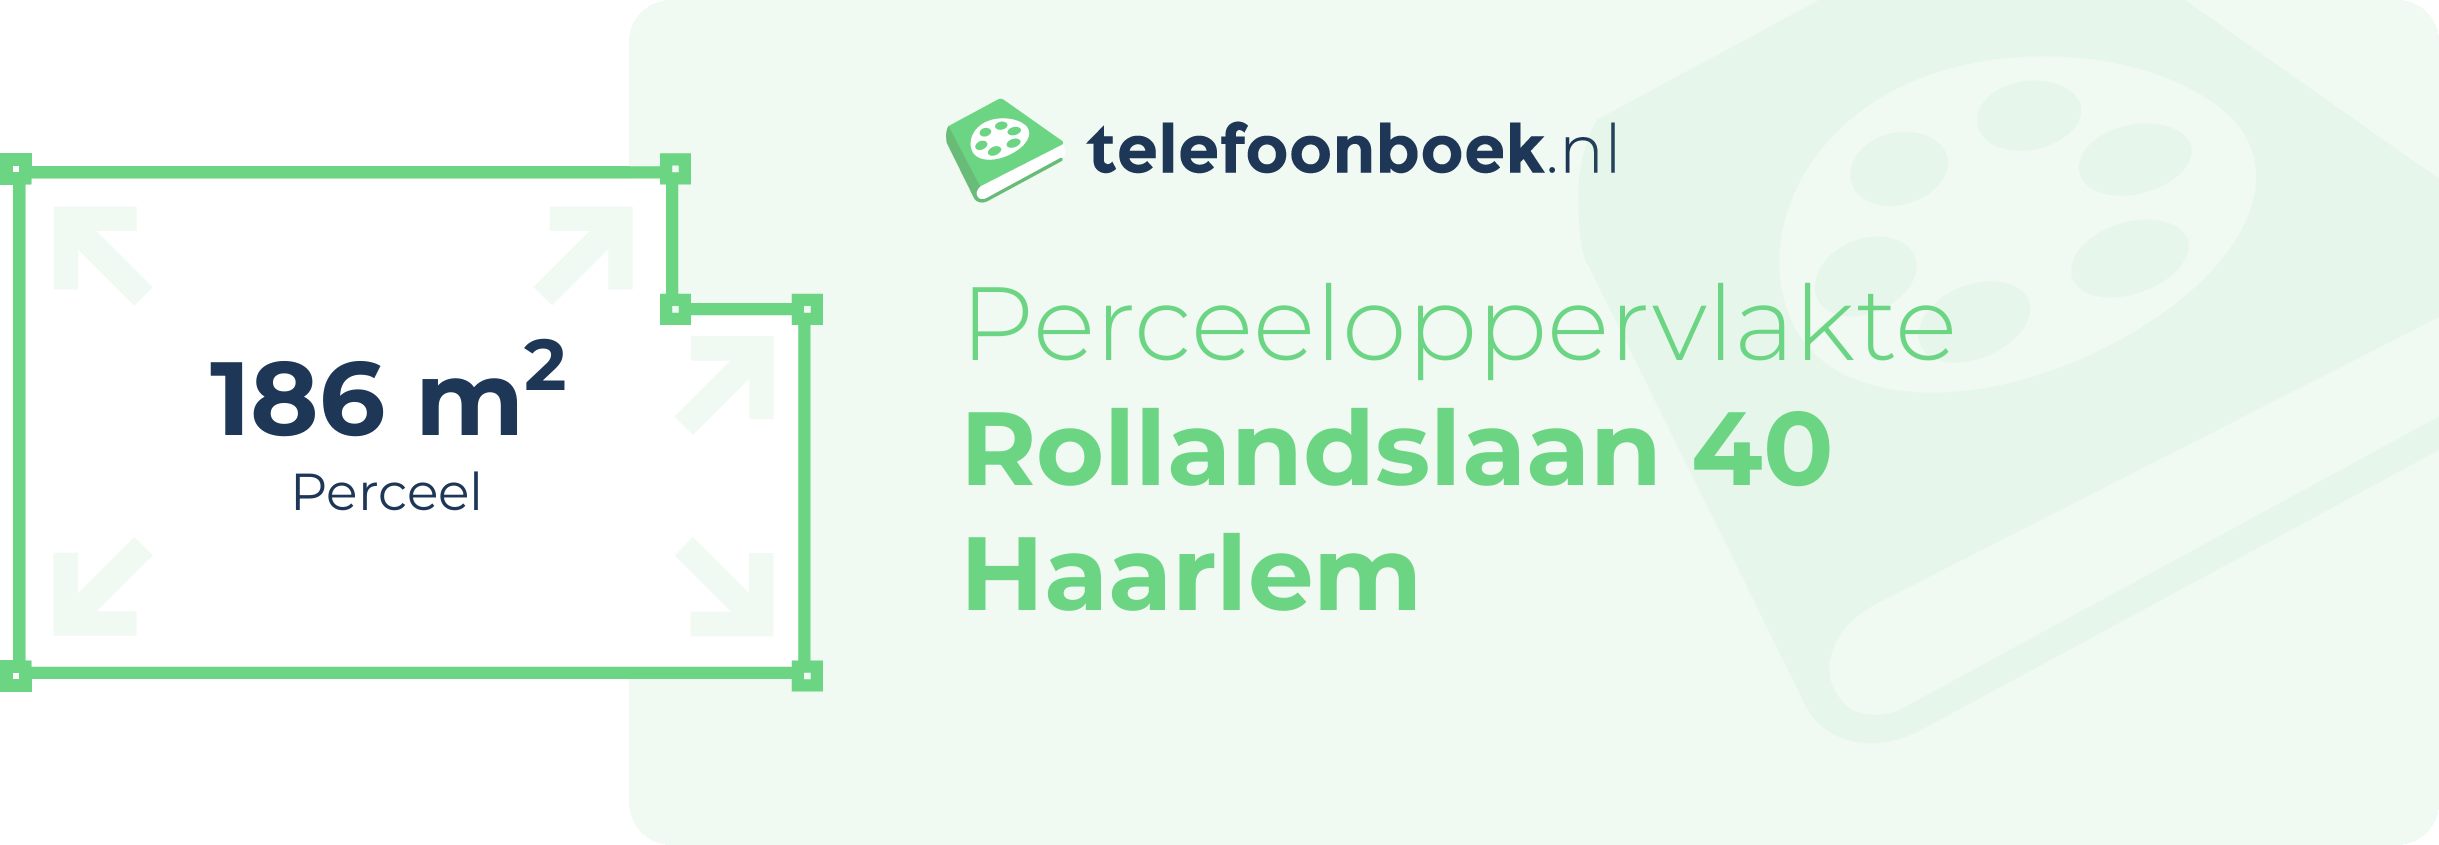 Perceeloppervlakte Rollandslaan 40 Haarlem